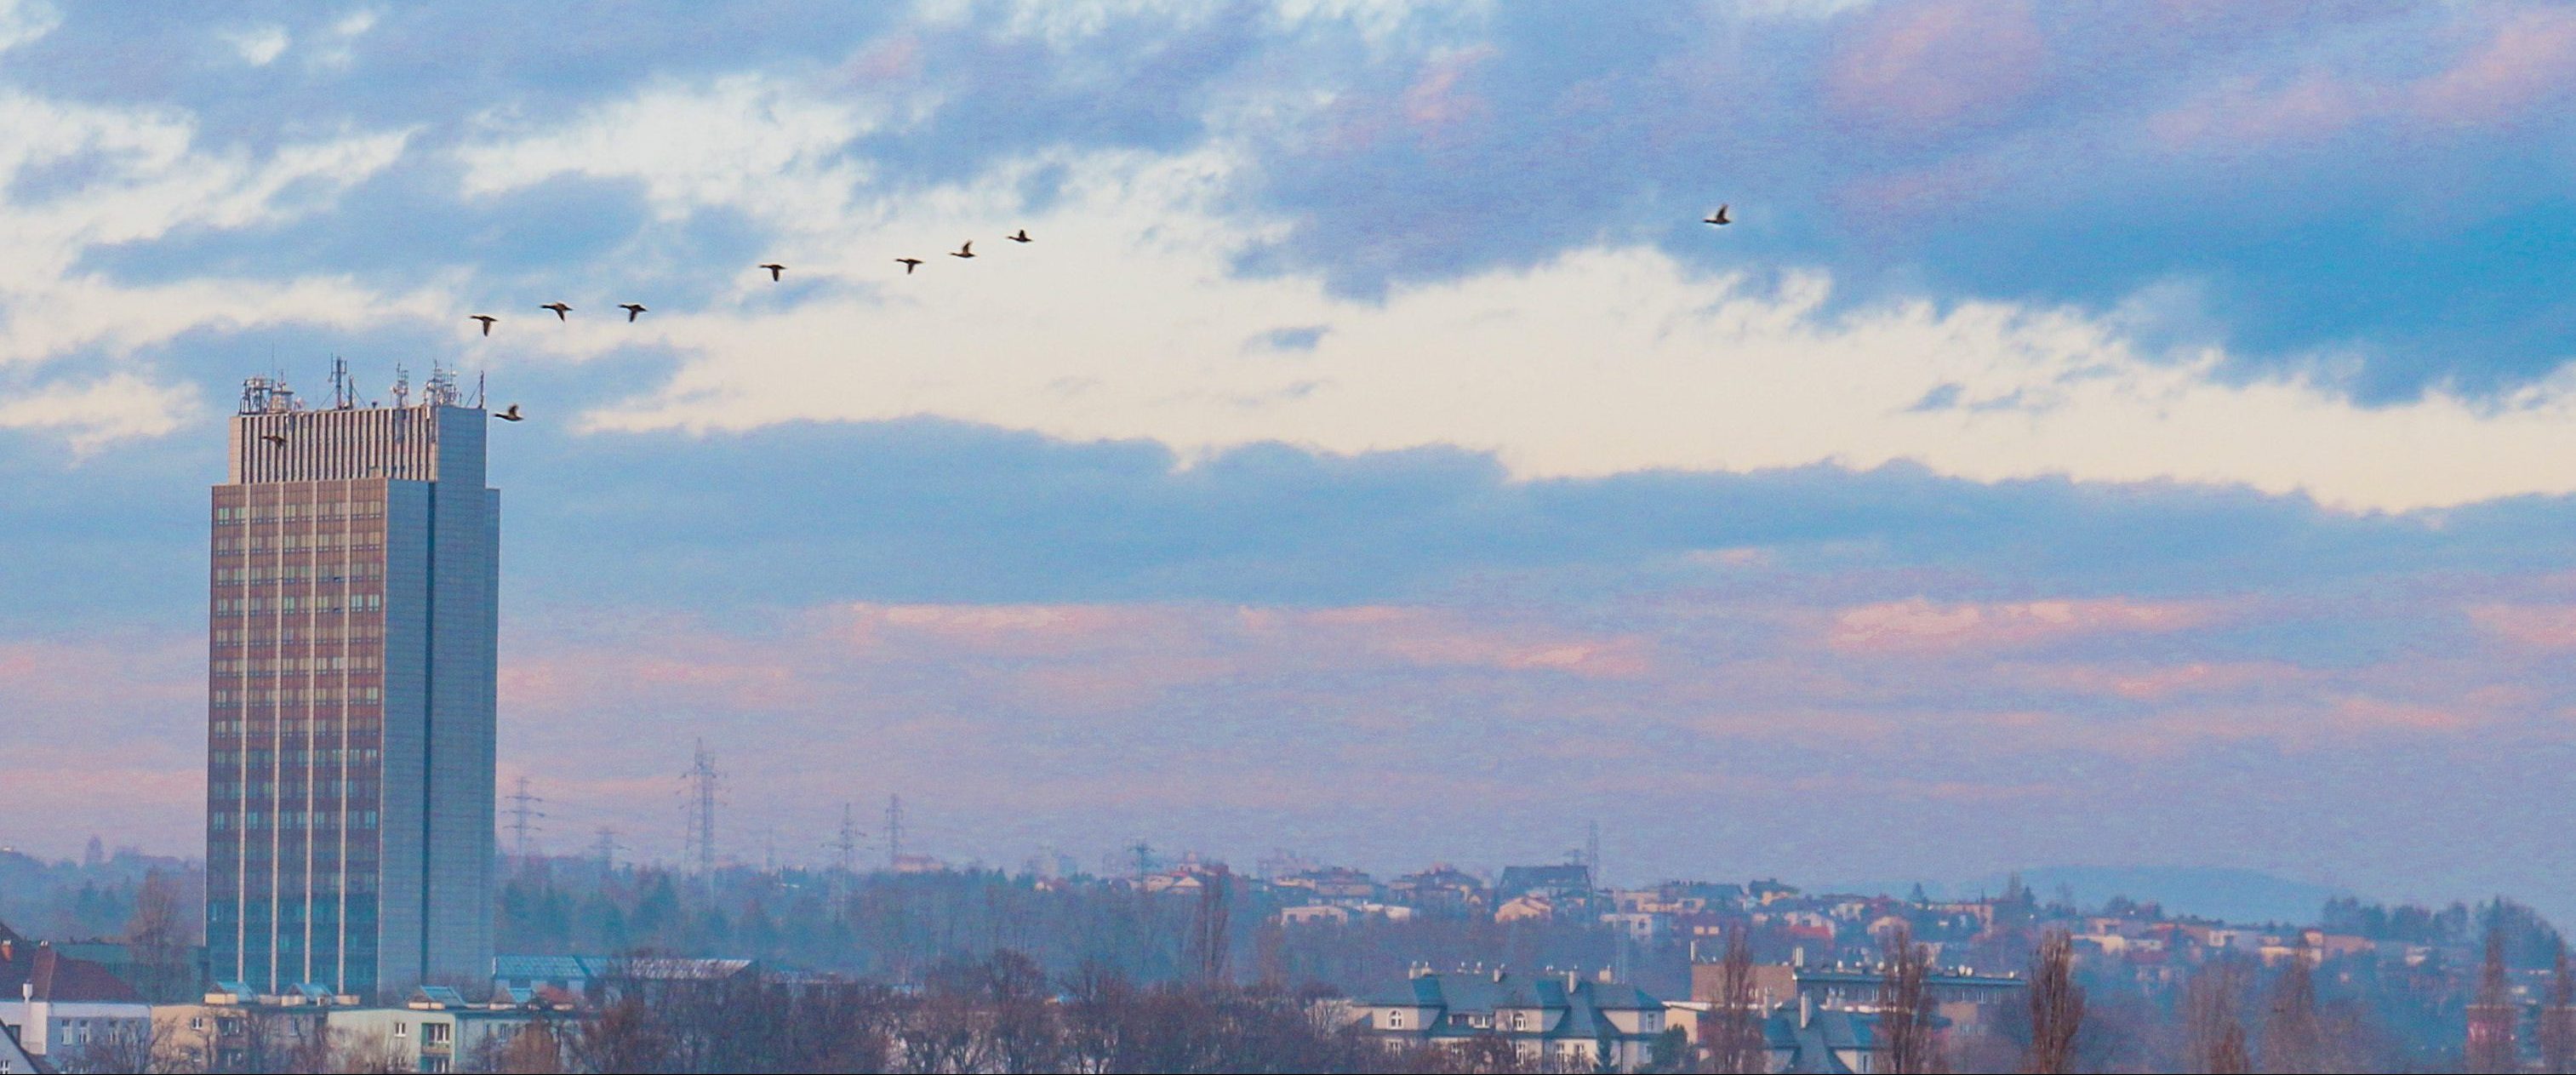 Panorama miasta przy zachodzie słońca, wysoki budynek i lecące ptaki